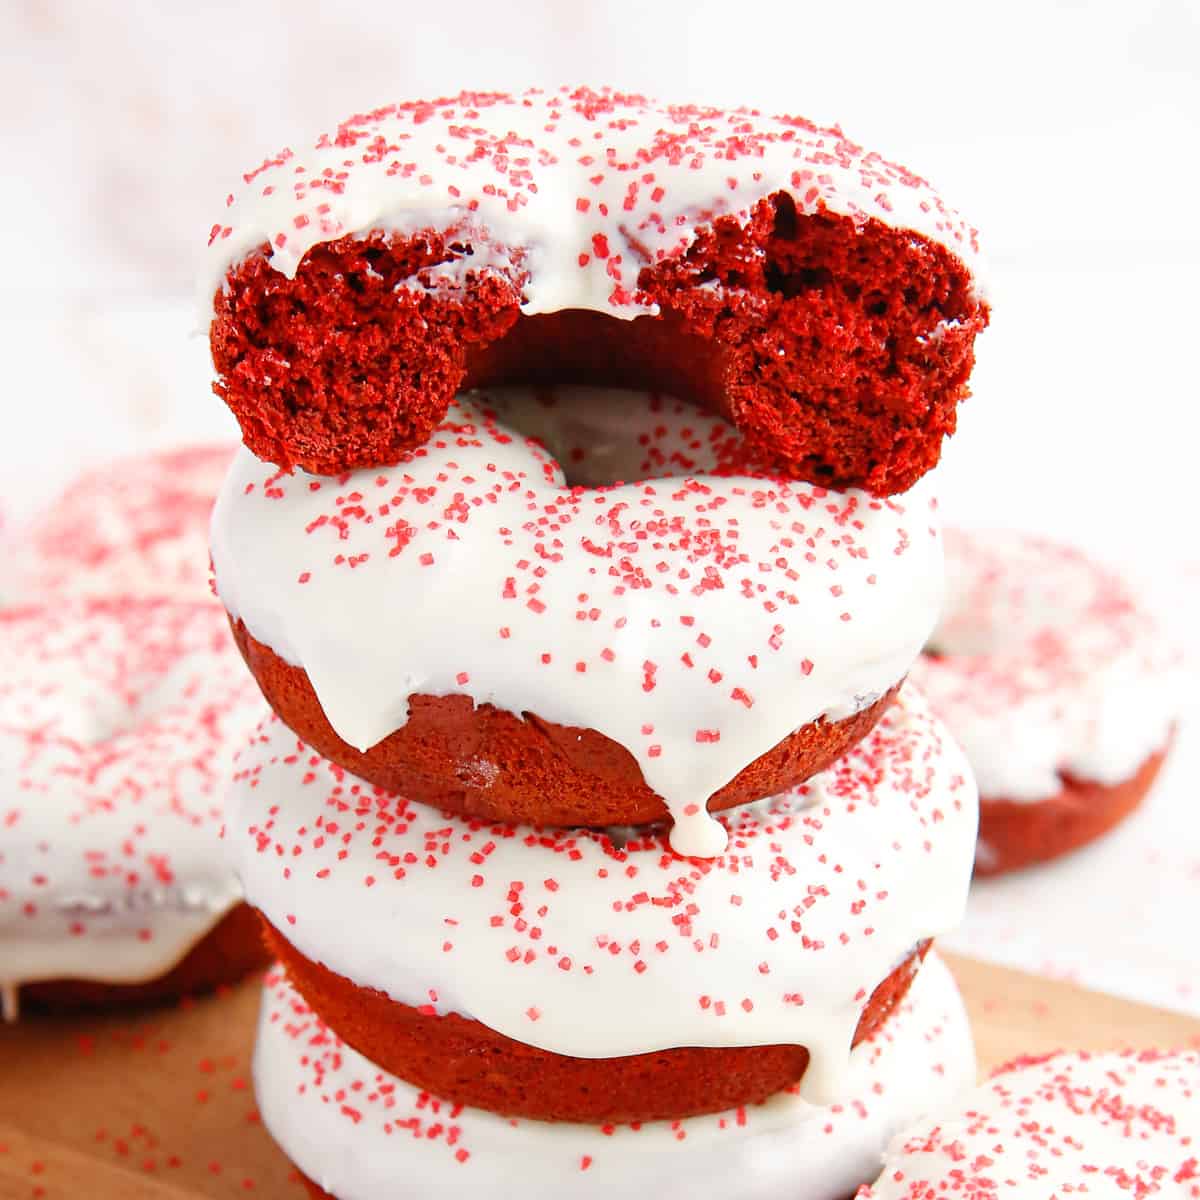 2-Ingredient Baked Red Velvet Donuts